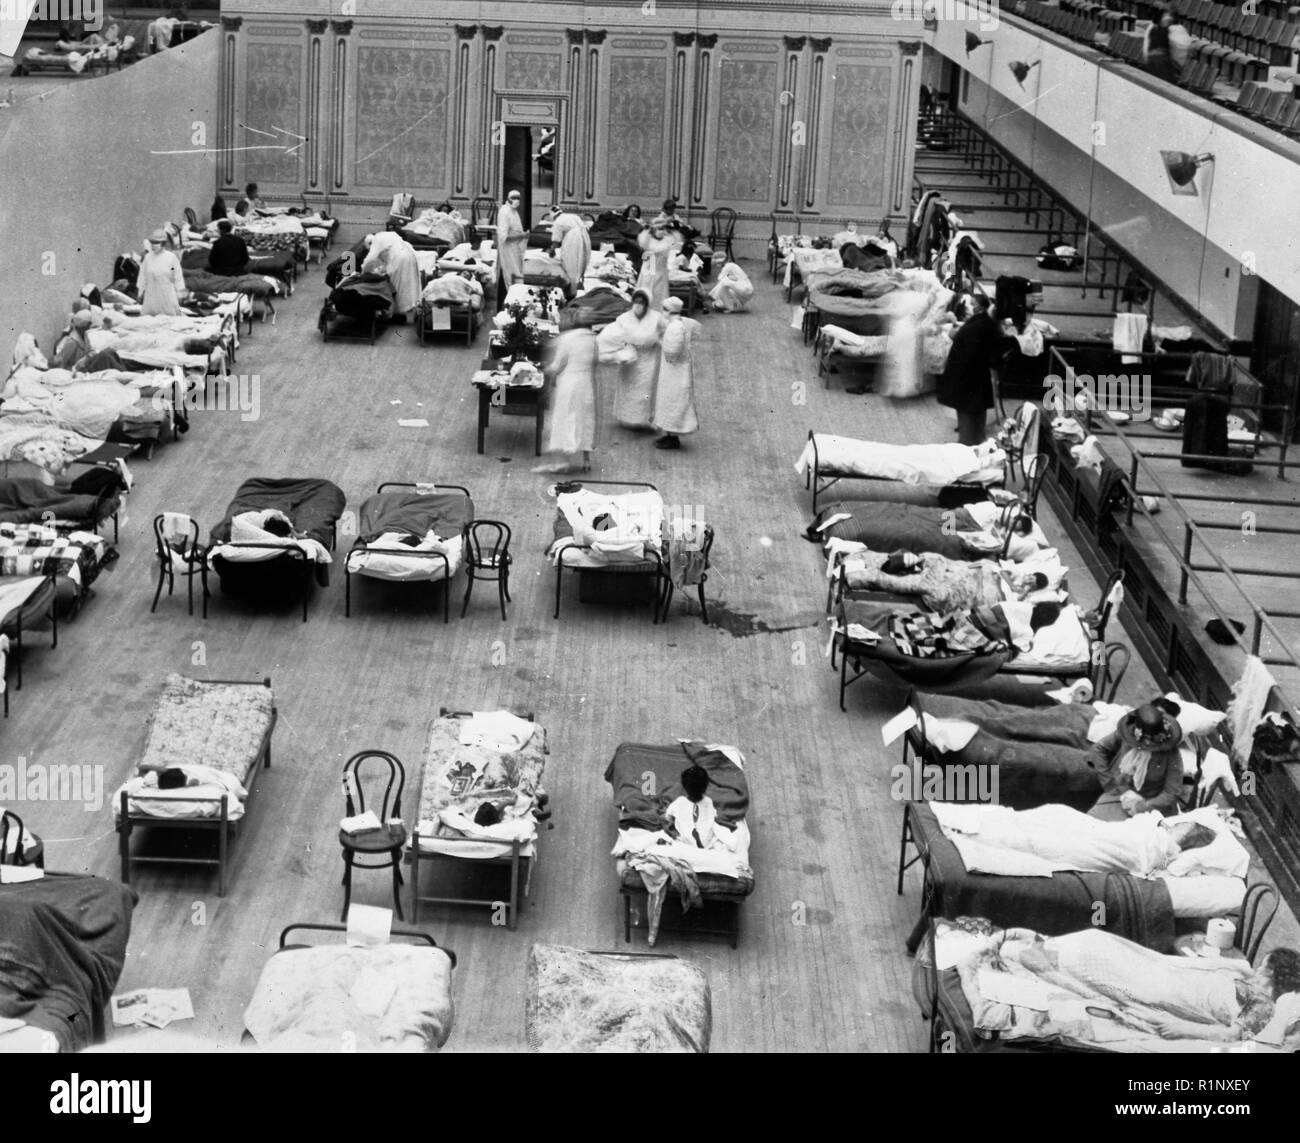 1918 Épidémie de grippe aviaire : l'Oakland Municipal Auditorium de l'utiliser comme un hôpital temporaire. La photo montre infirmières bénévoles de la Croix Rouge américaine qui tend à l'Oakland malades grippe Auditorium, Oakland, Californie, au cours de la pandémie de grippe de 1918. Banque D'Images